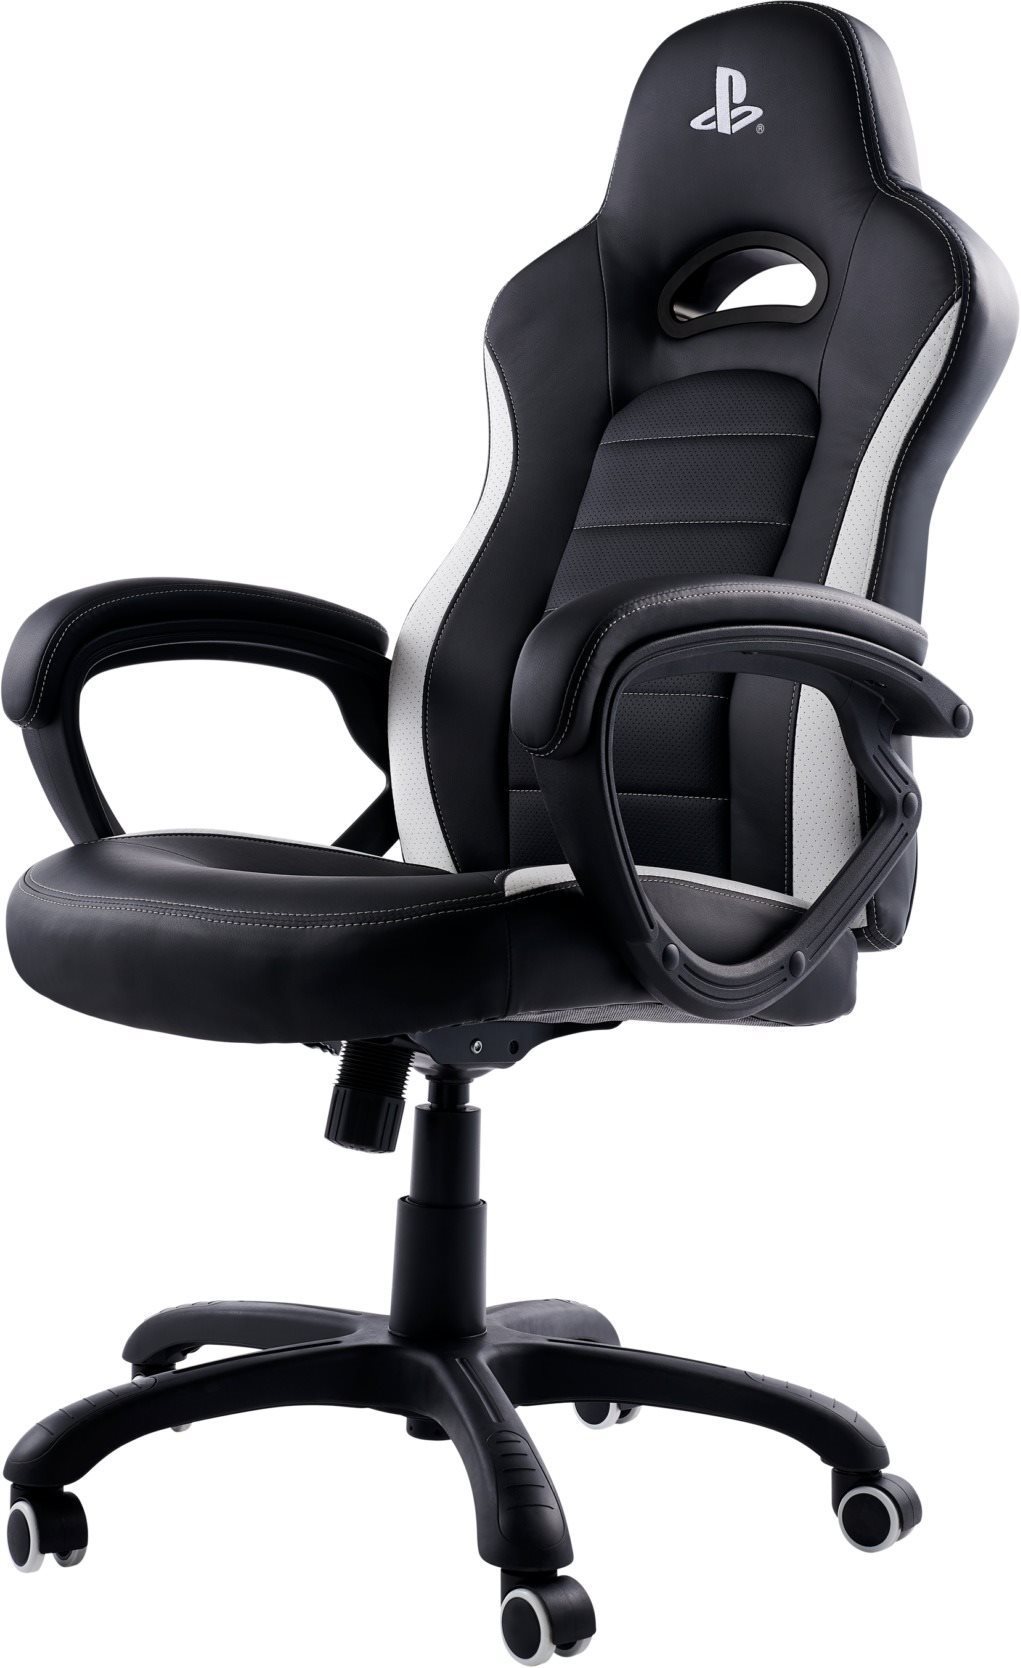 Nacon Gaming Chair - PlayStation